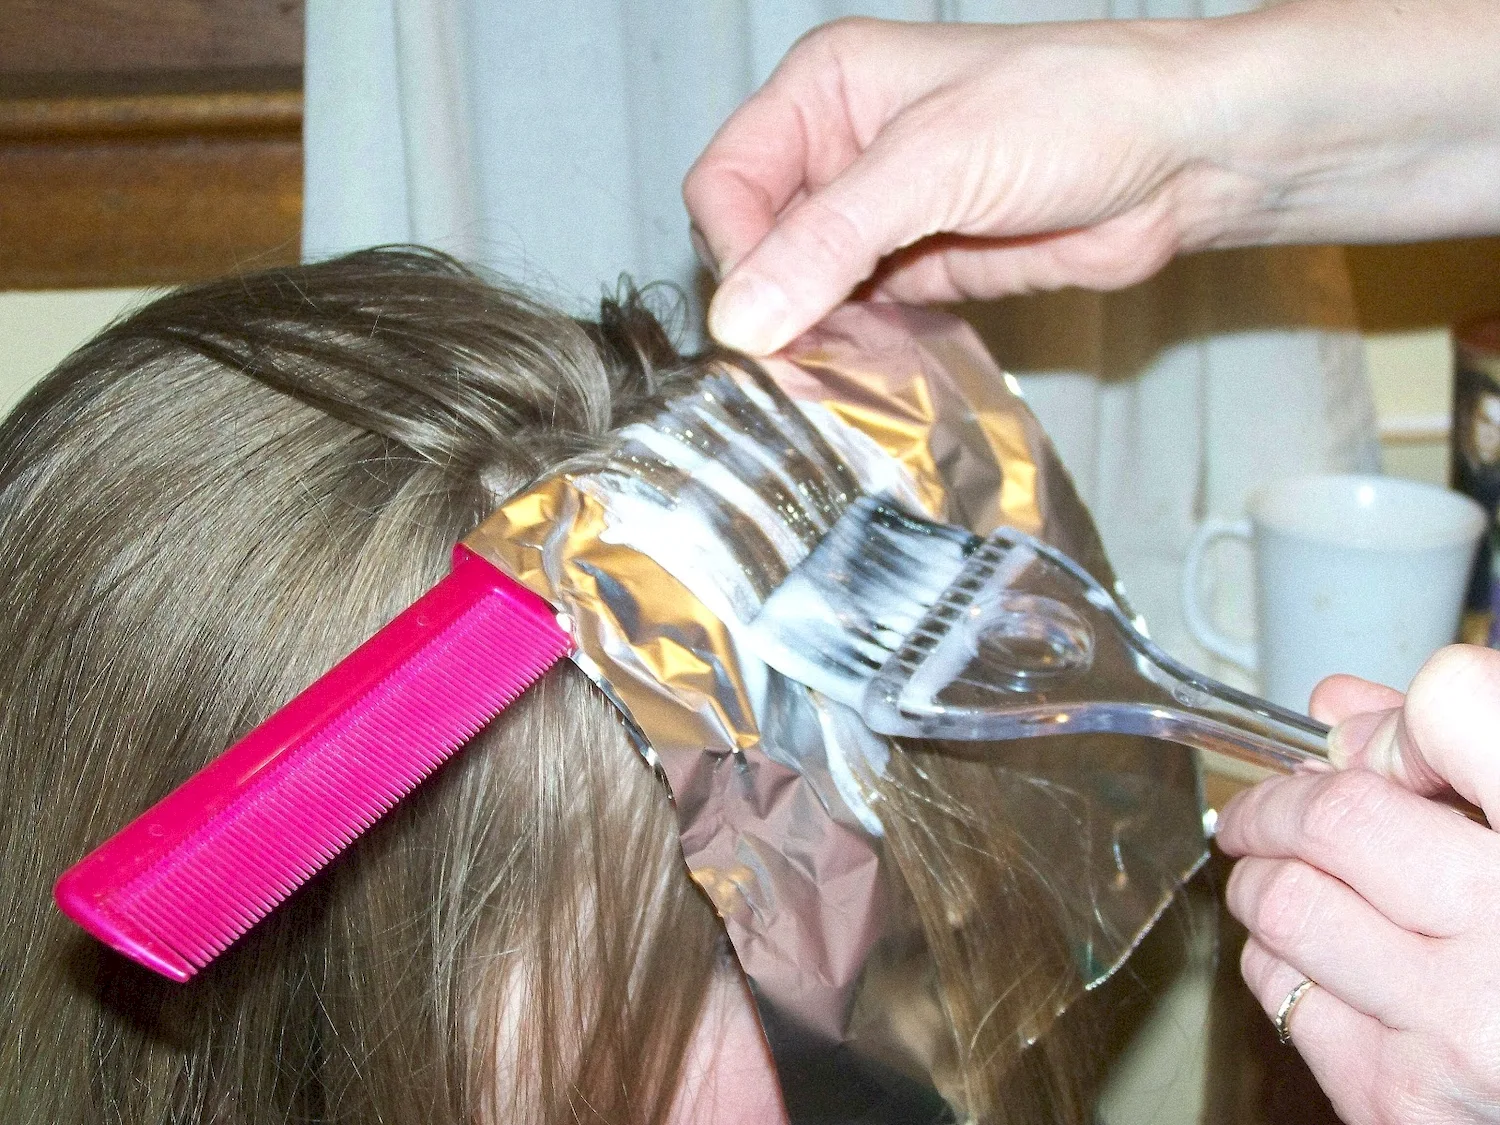 Мелирование волос в домашних условиях фольгой